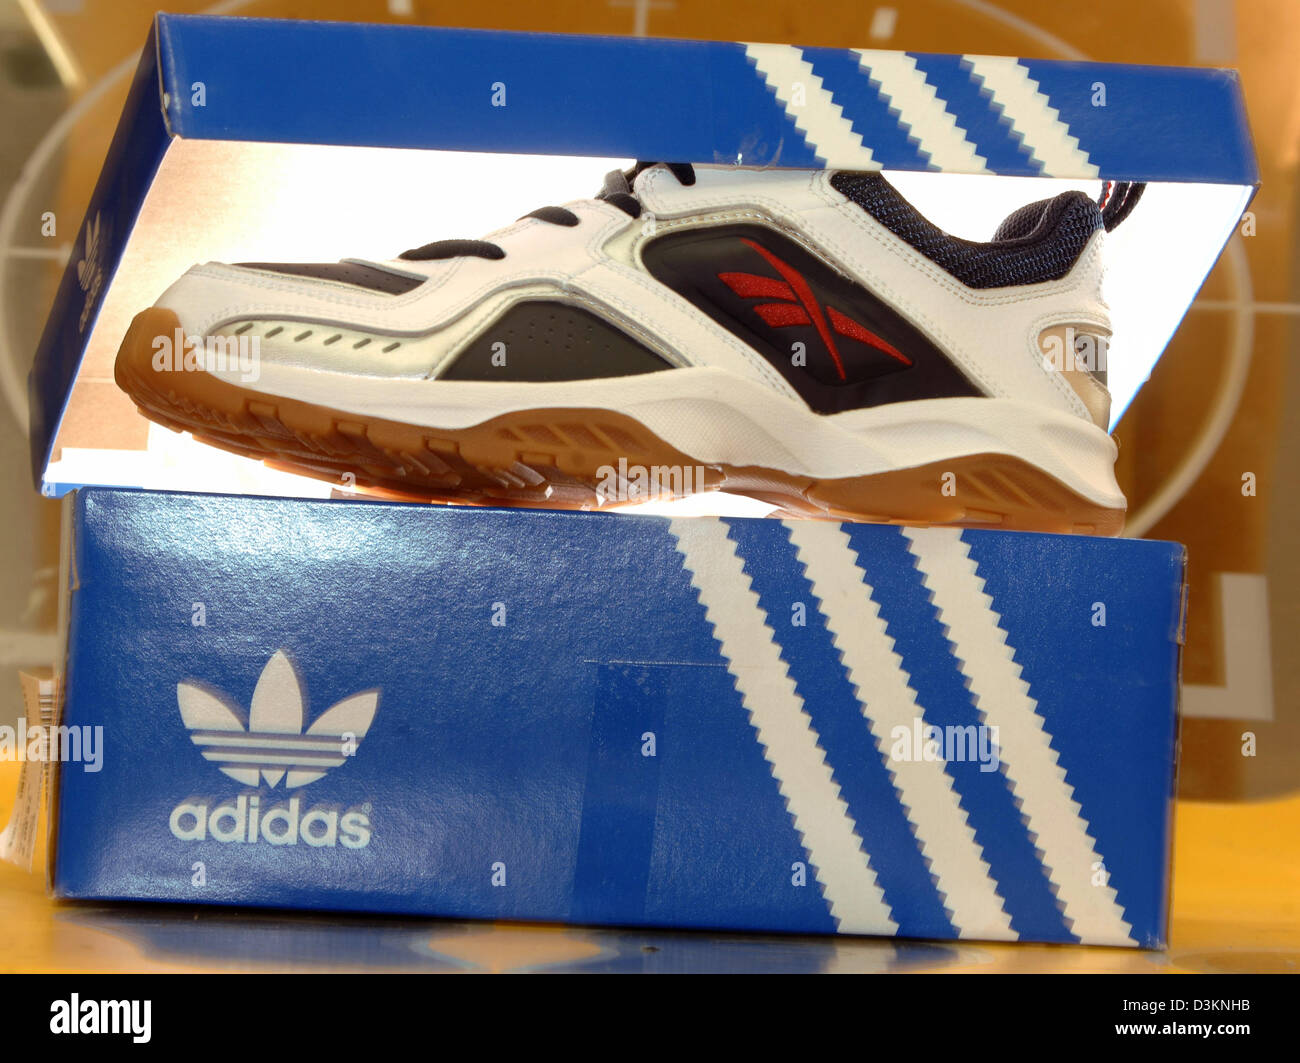 Dpa) - Bild zeigt einen Reebok Sneaker in einer Adidas-Schuh-Kiste ein Sportgeschäft in München, Deutschland, Mittwoch, 3. August 2005. Um Lücke zu weltweit führenden Sportartikel erwarb Unternehmen Nike die